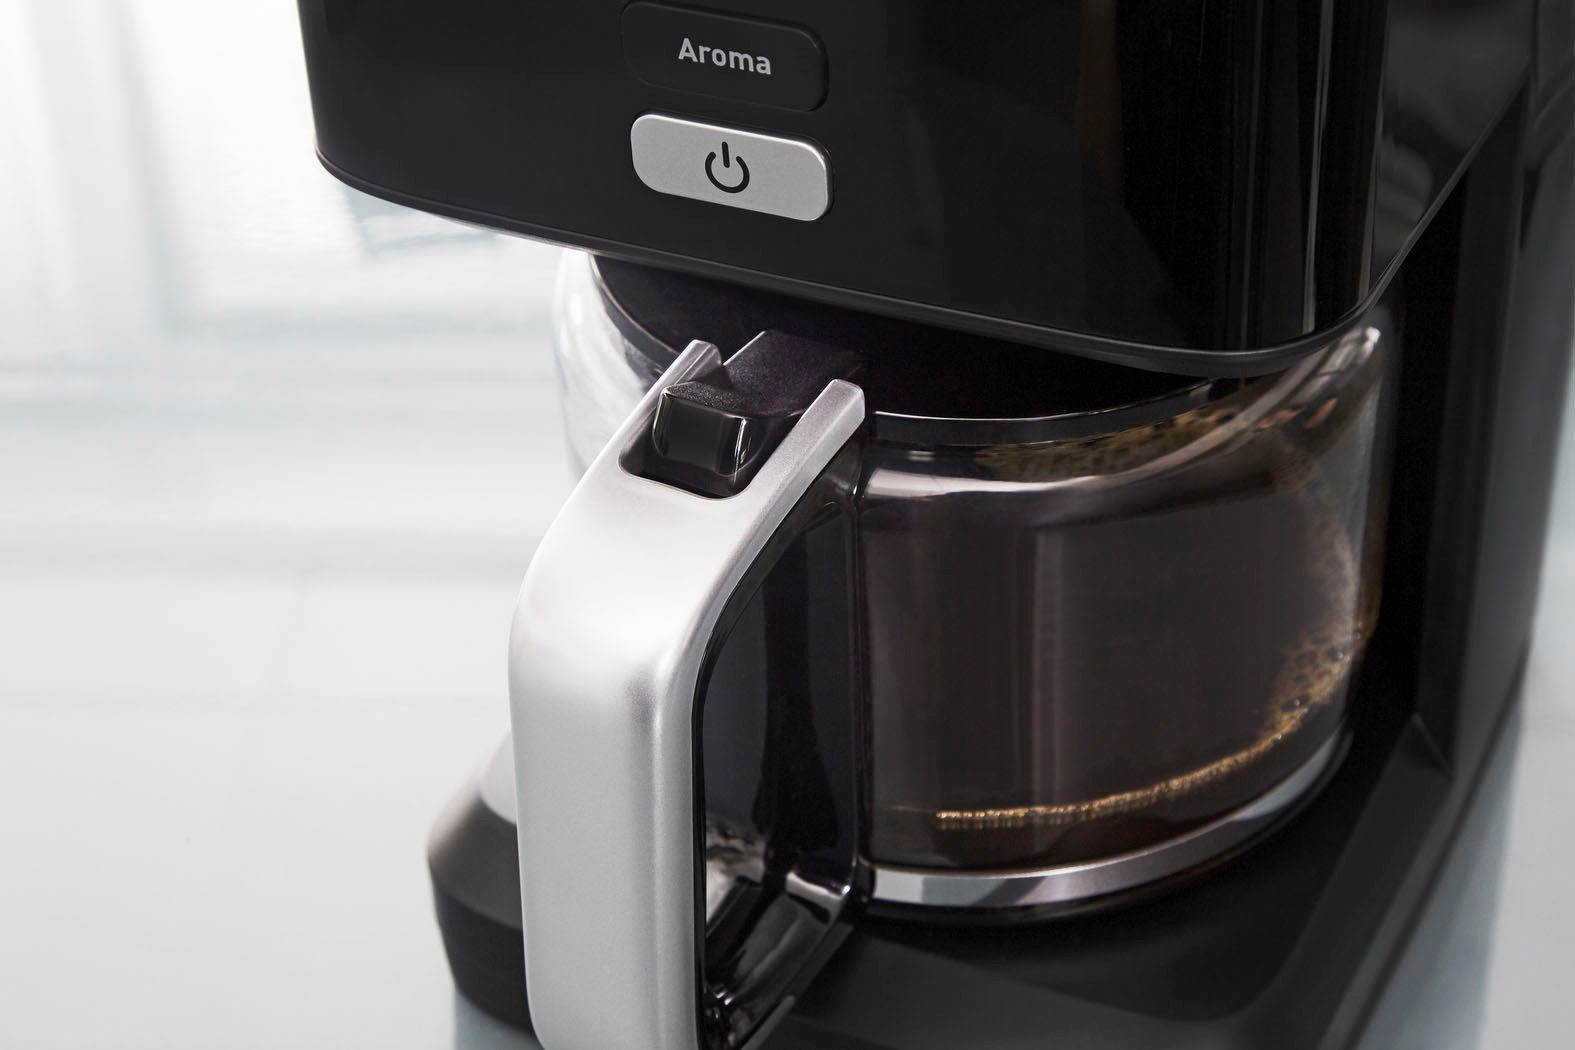 Krups Filterkaffeemaschine KM6008 Light, Minuten nach 1,25l Abschaltung 30 Kaffeekanne, automatische Smart'n 24-Std-Timer